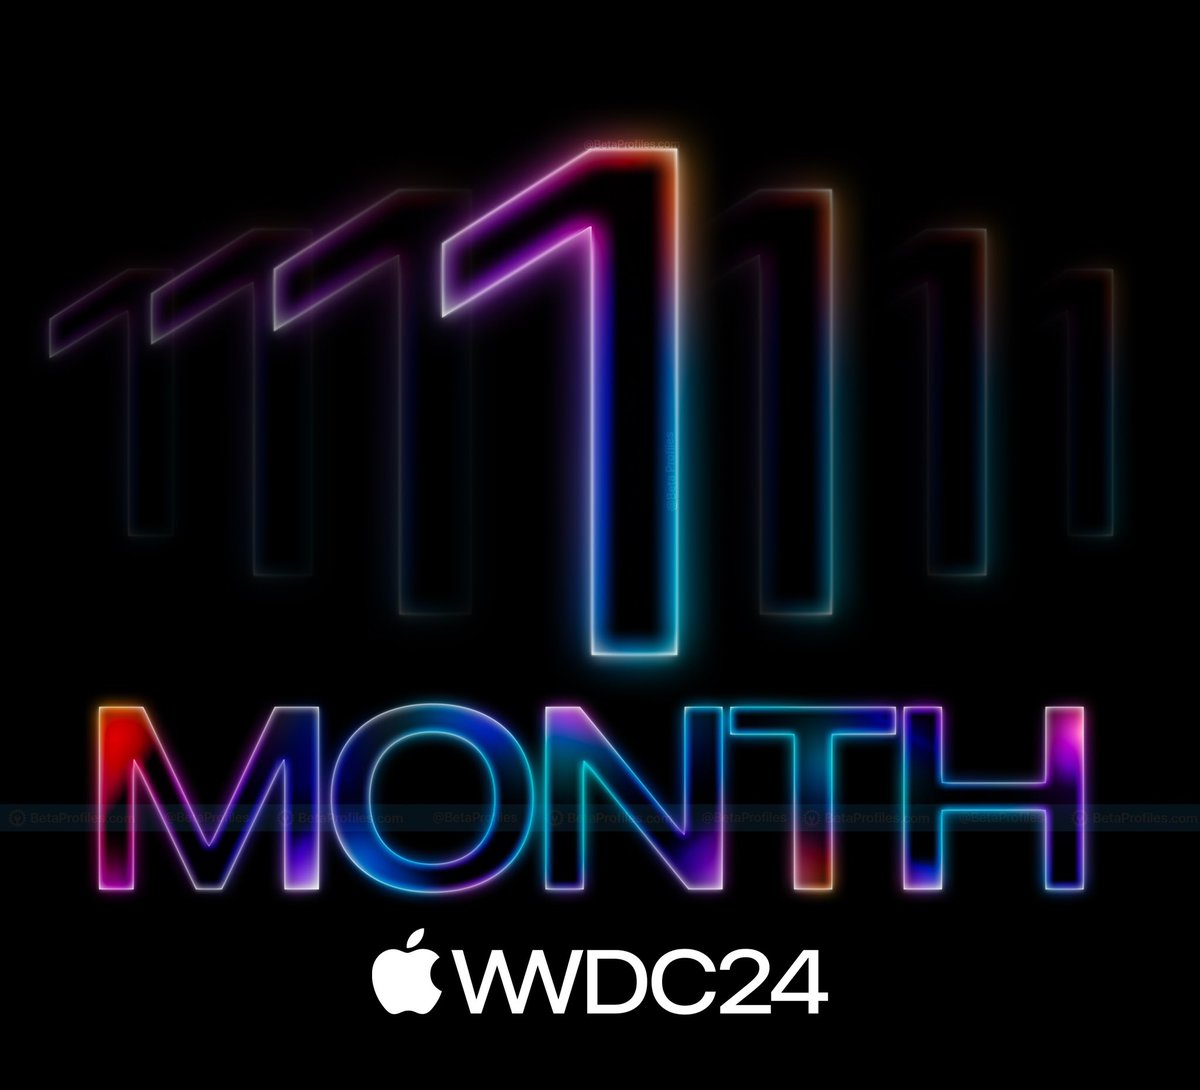 شهر واحد يفصلنا عن مؤتمر أبل للمطورين  #WWDC2024، والذي سيكون بتاريخ 10 يونيو القادم.
سيتم خلال المؤتمر الإعلان عن نظام #iOS18 المنتظر بشدة، لدعمه مميزات الذكاء الاصطناعي التوليدي لأول مرة على أجهزة iPhone.